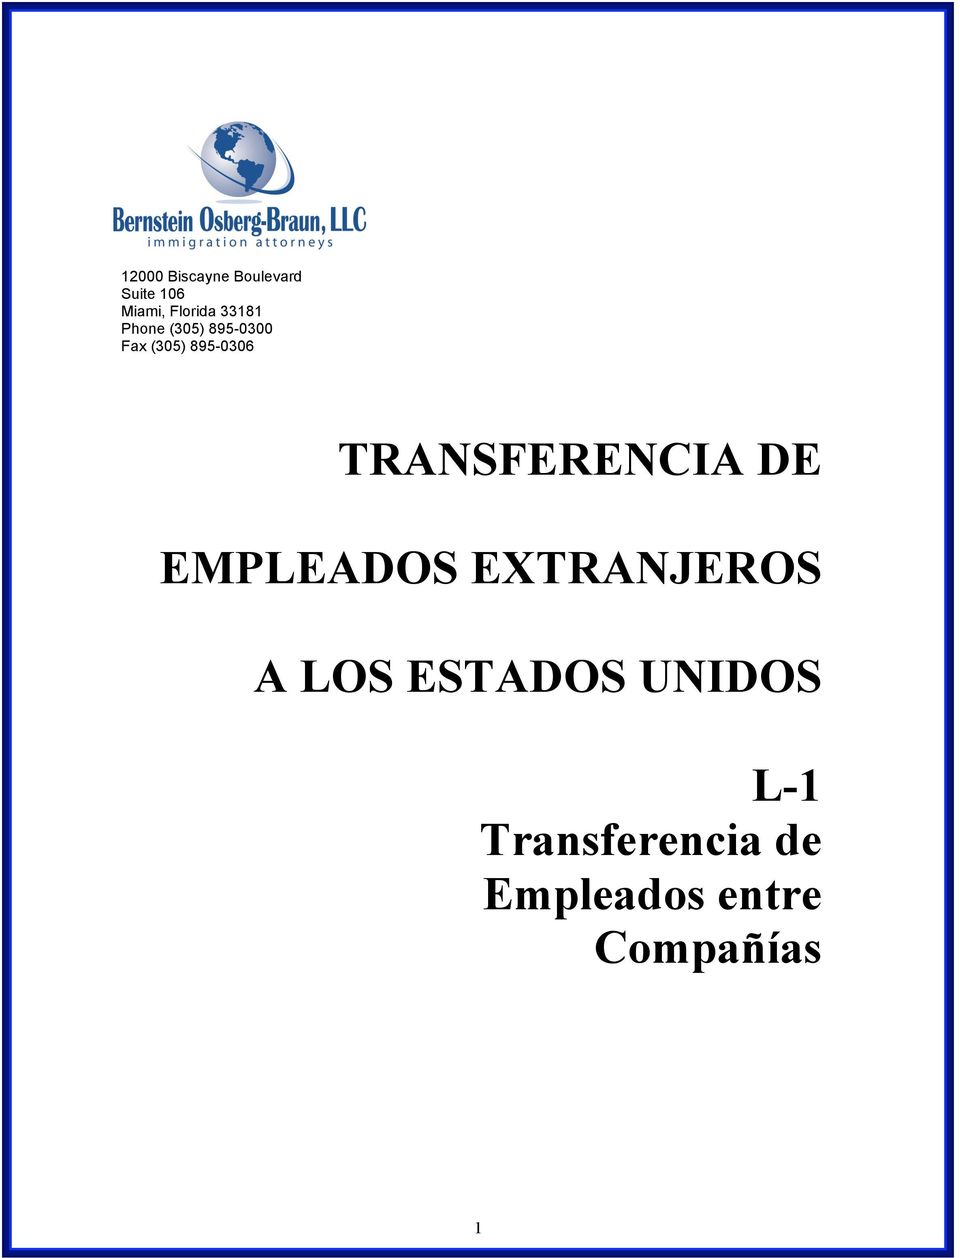 TRANSFERENCIA DE EMPLEADOS EXTRANJEROS A LOS